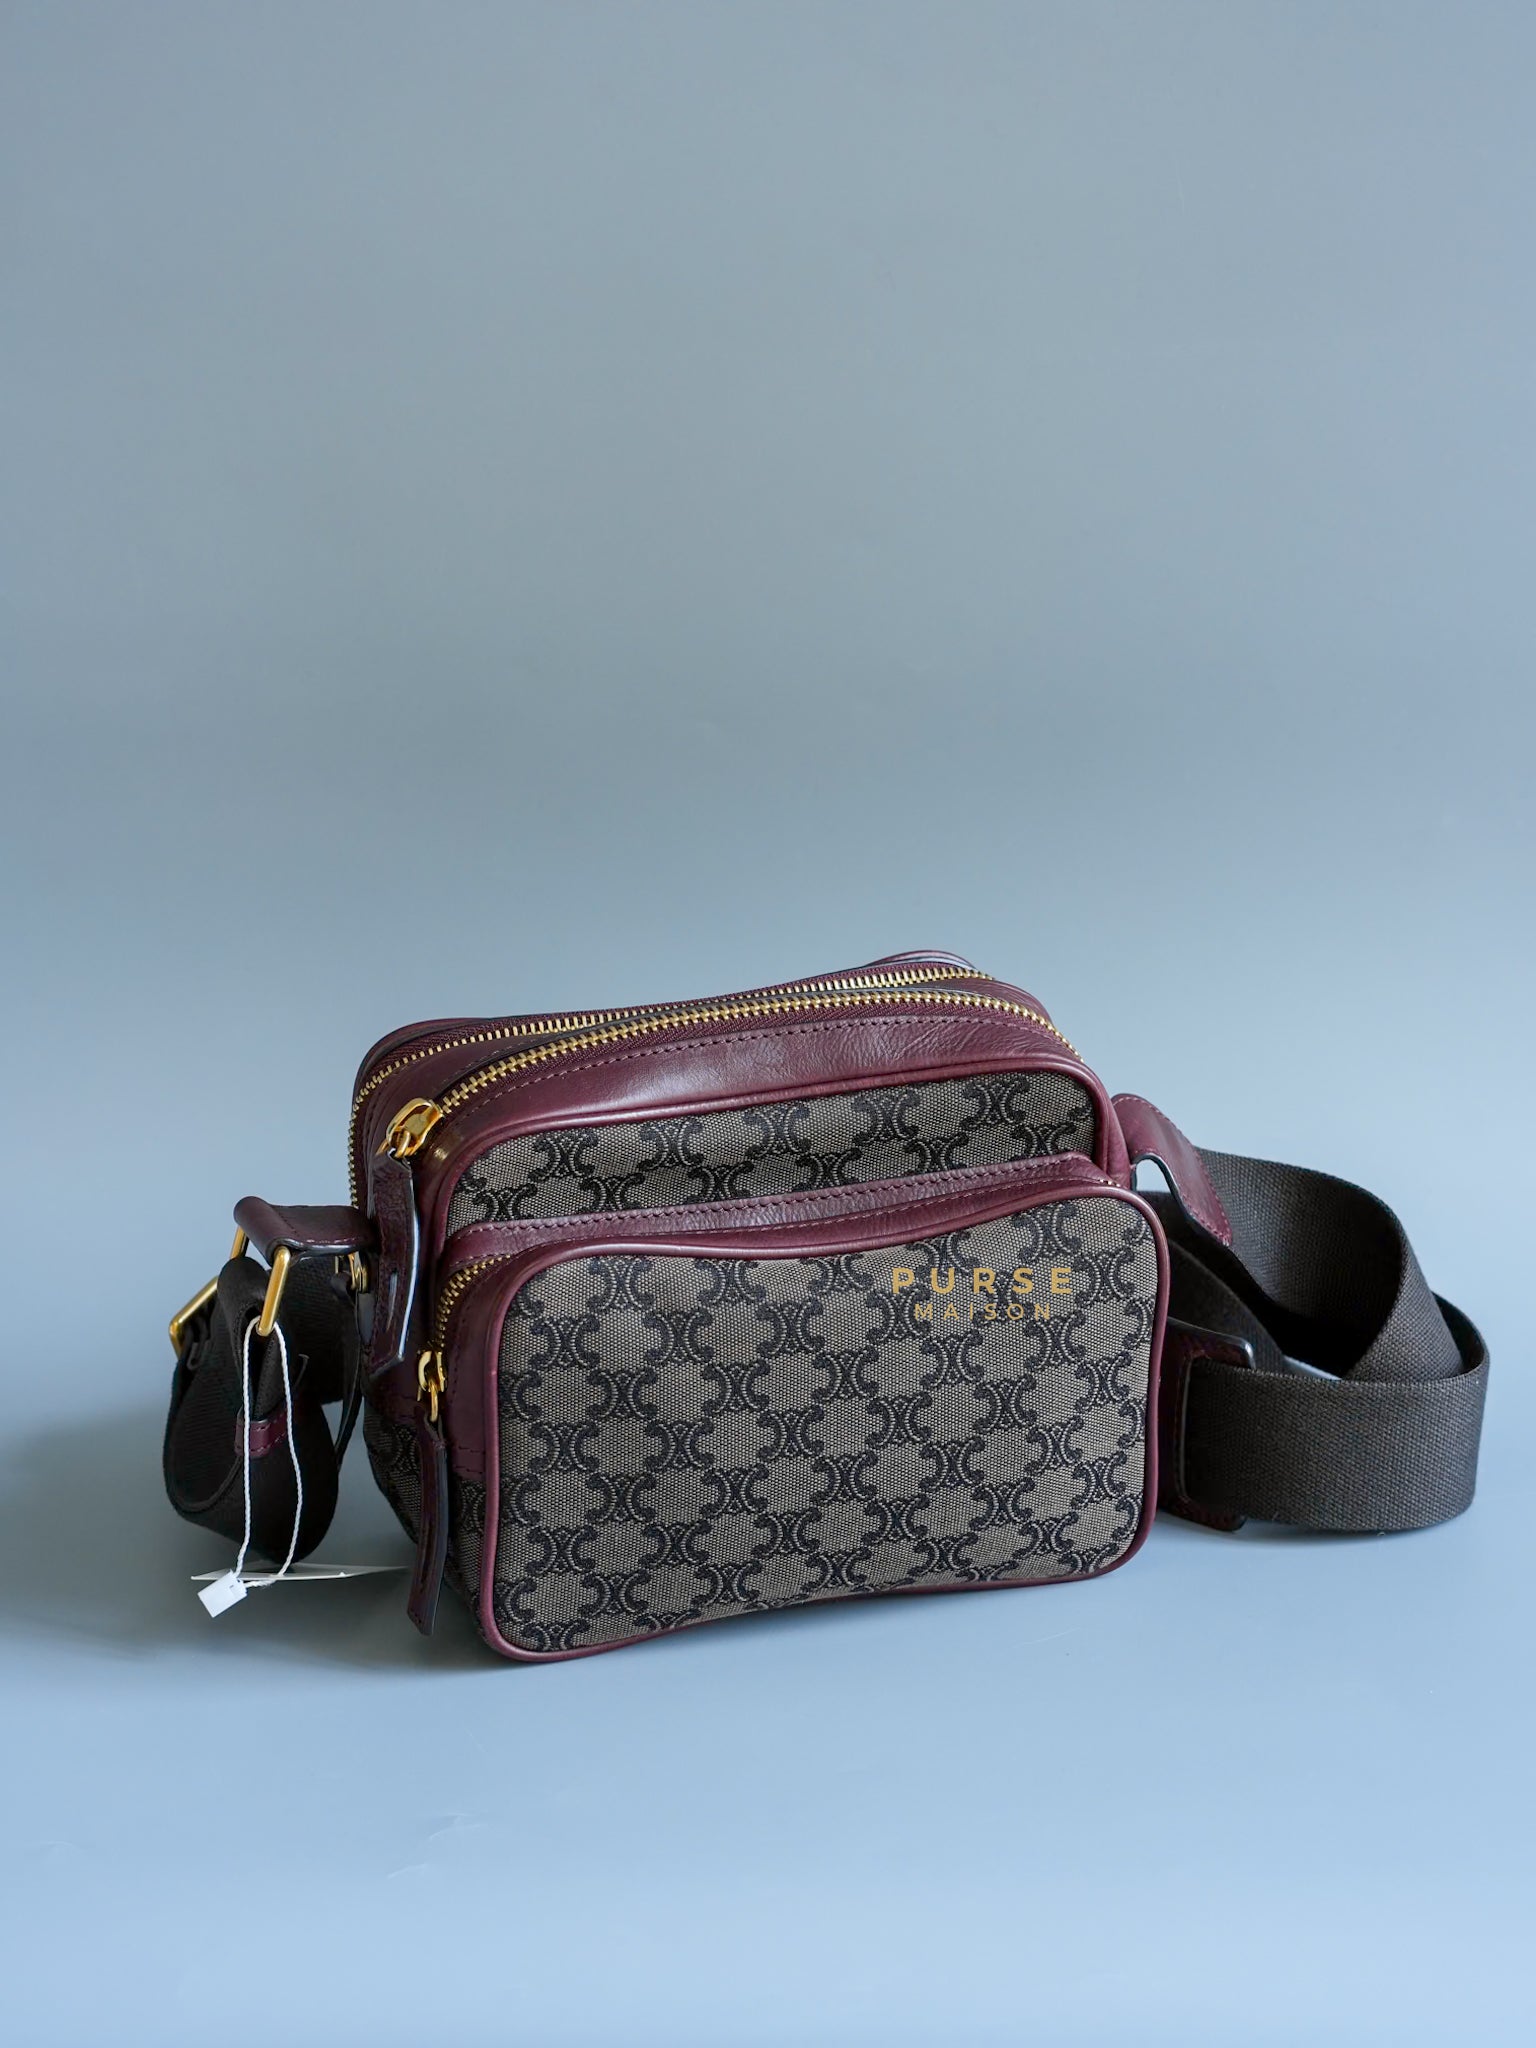 Vintage Triple Zip Messenger Bag in Brown Canvas | Purse Maison Luxury Bags Shop